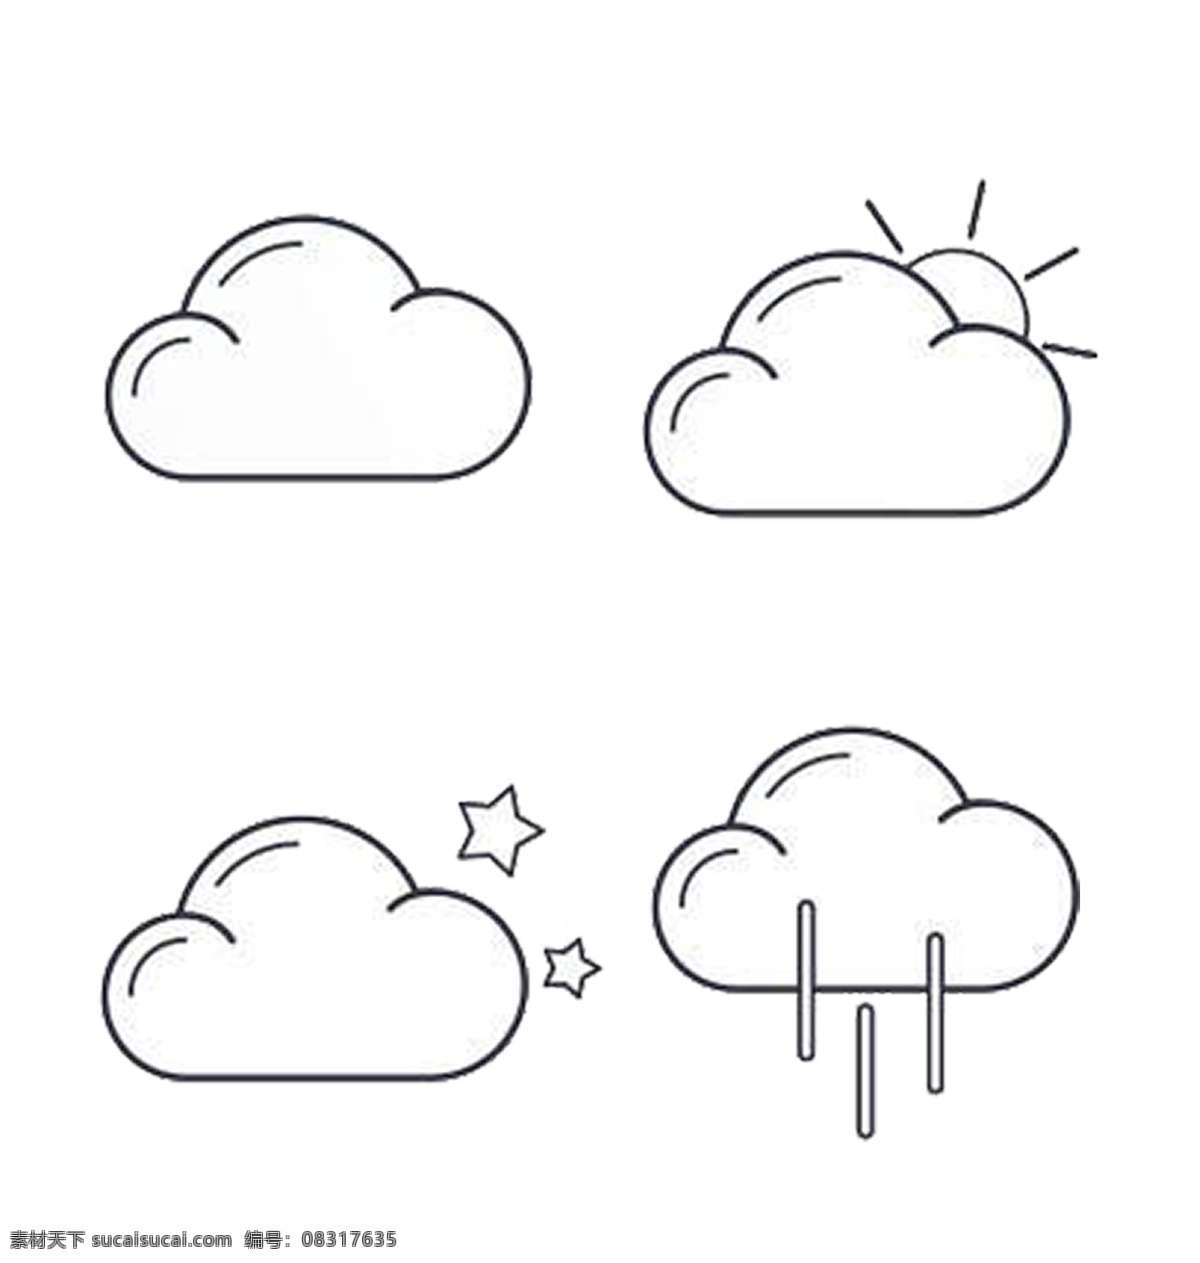 天气 简笔 小 图标素材 图标 多云 多云转晴 晴空 下雨 简单线条 免抠 可分开使用 可用作装饰